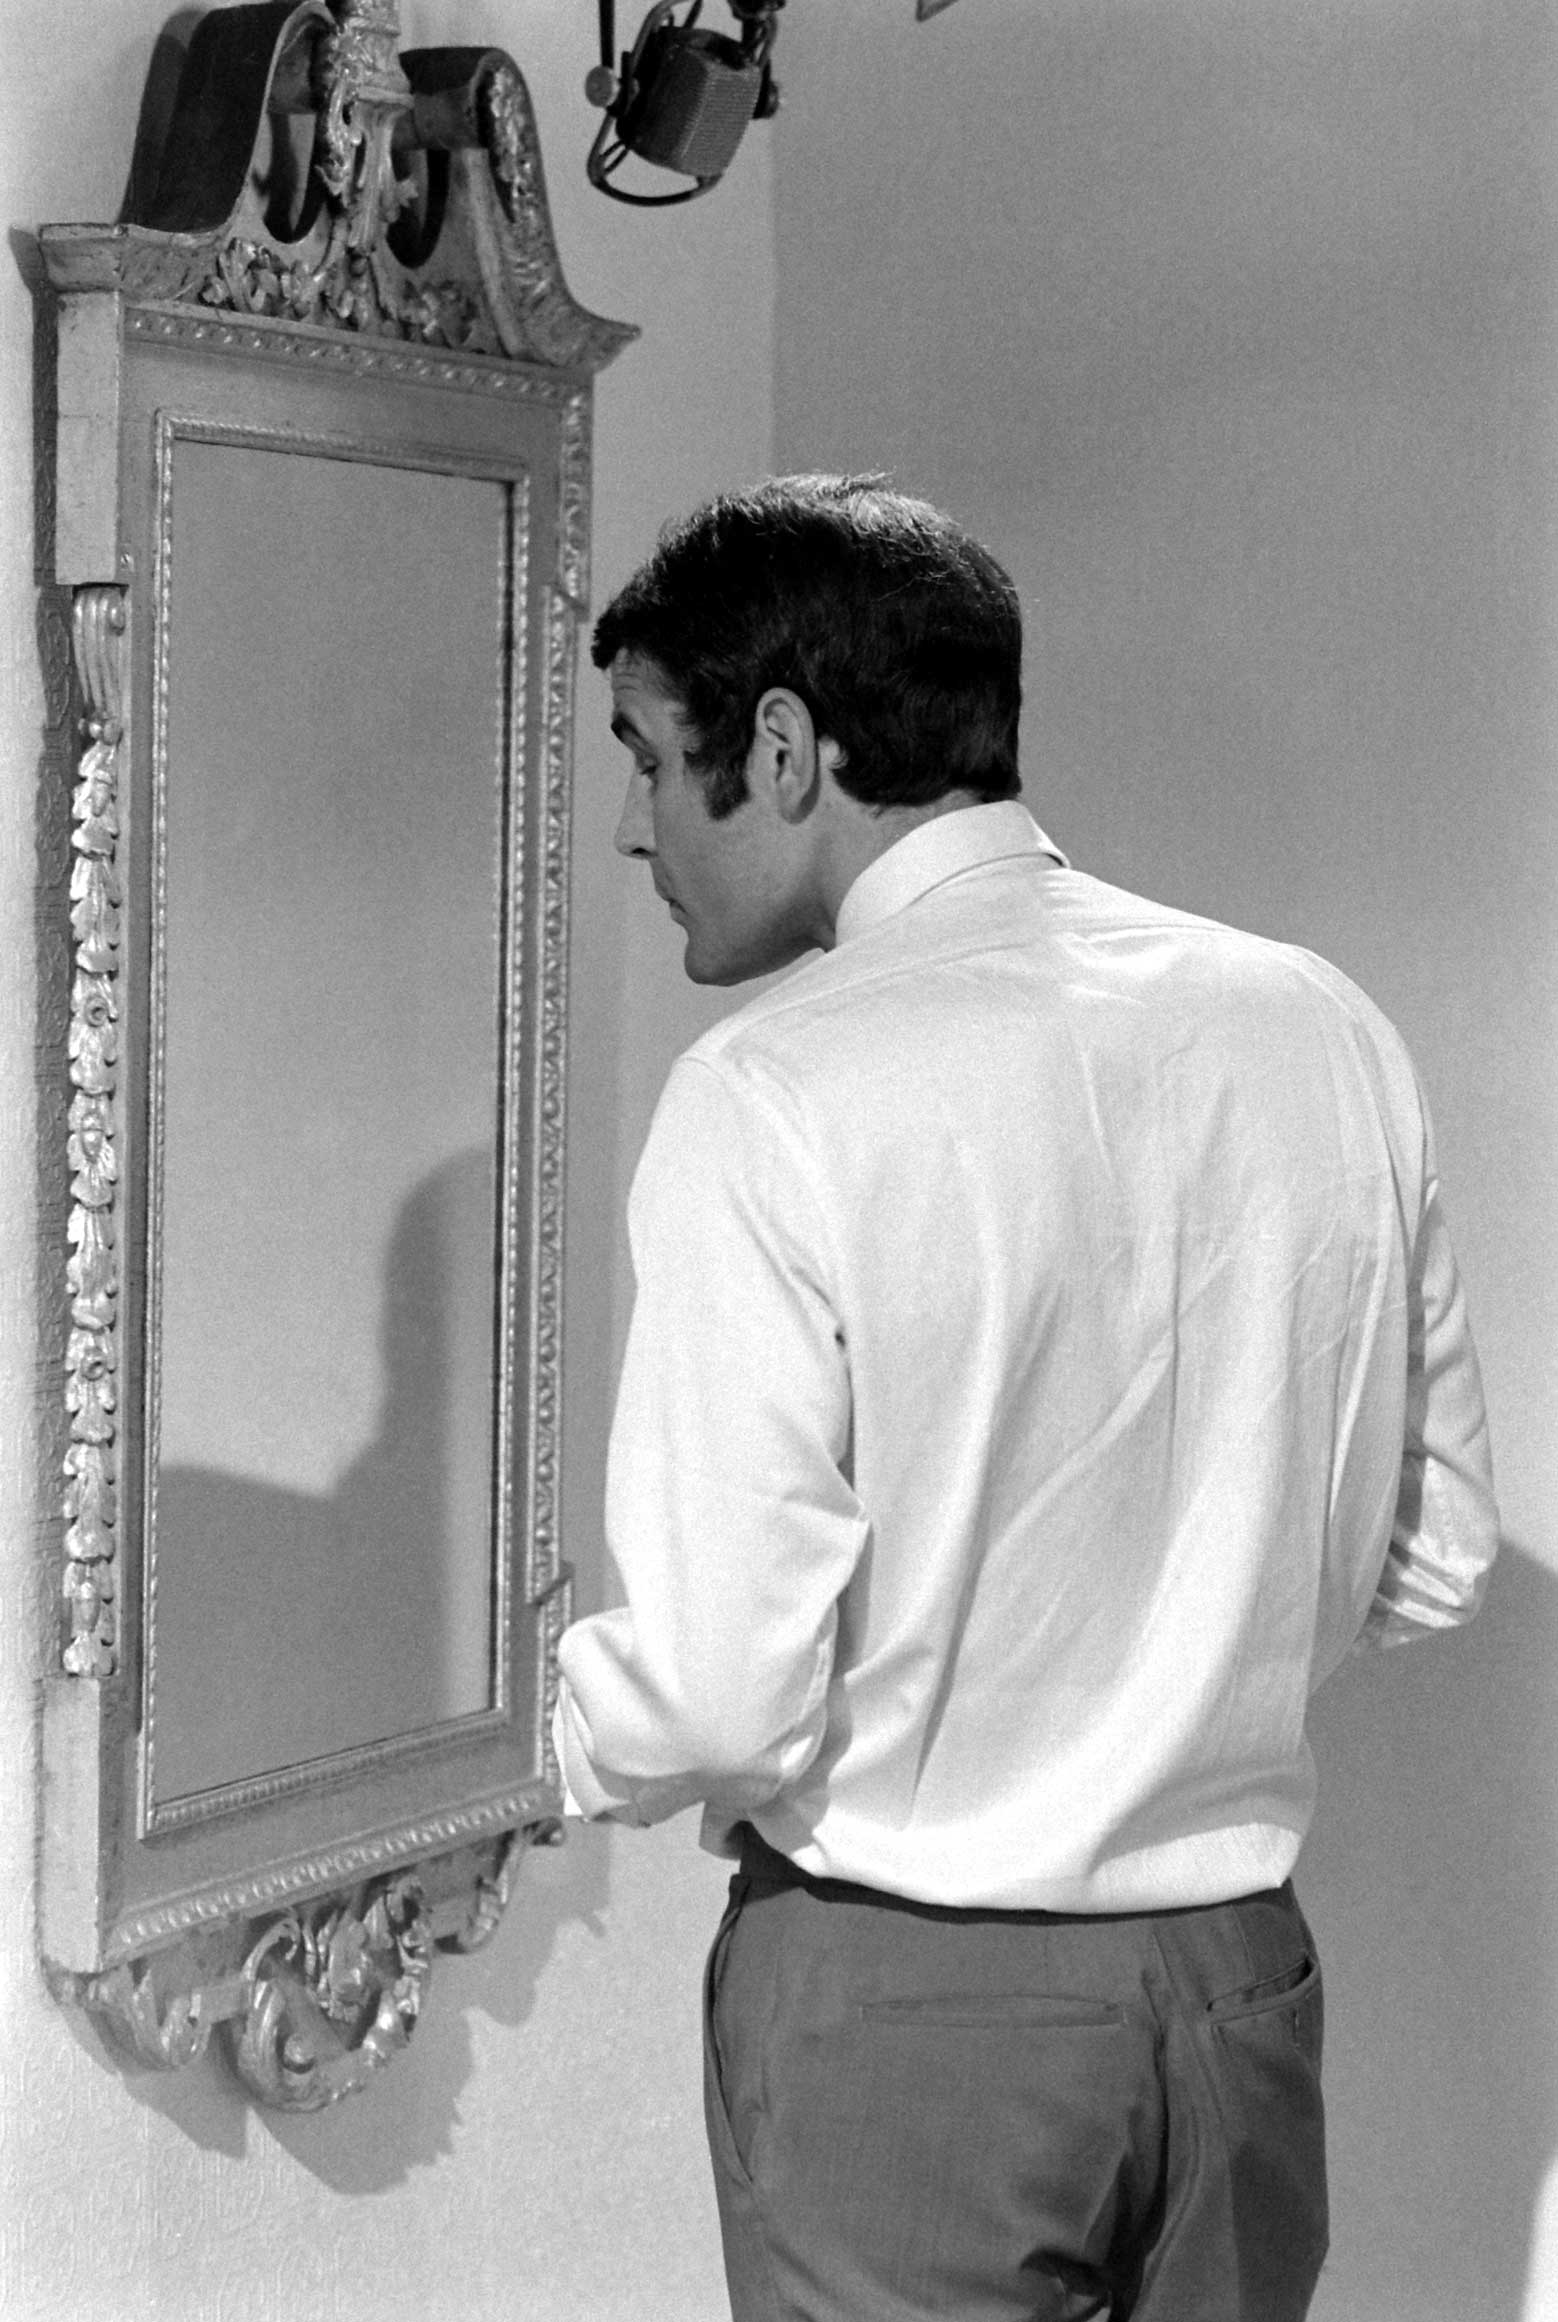 Hans de Vries during James Bond audition, 1967.